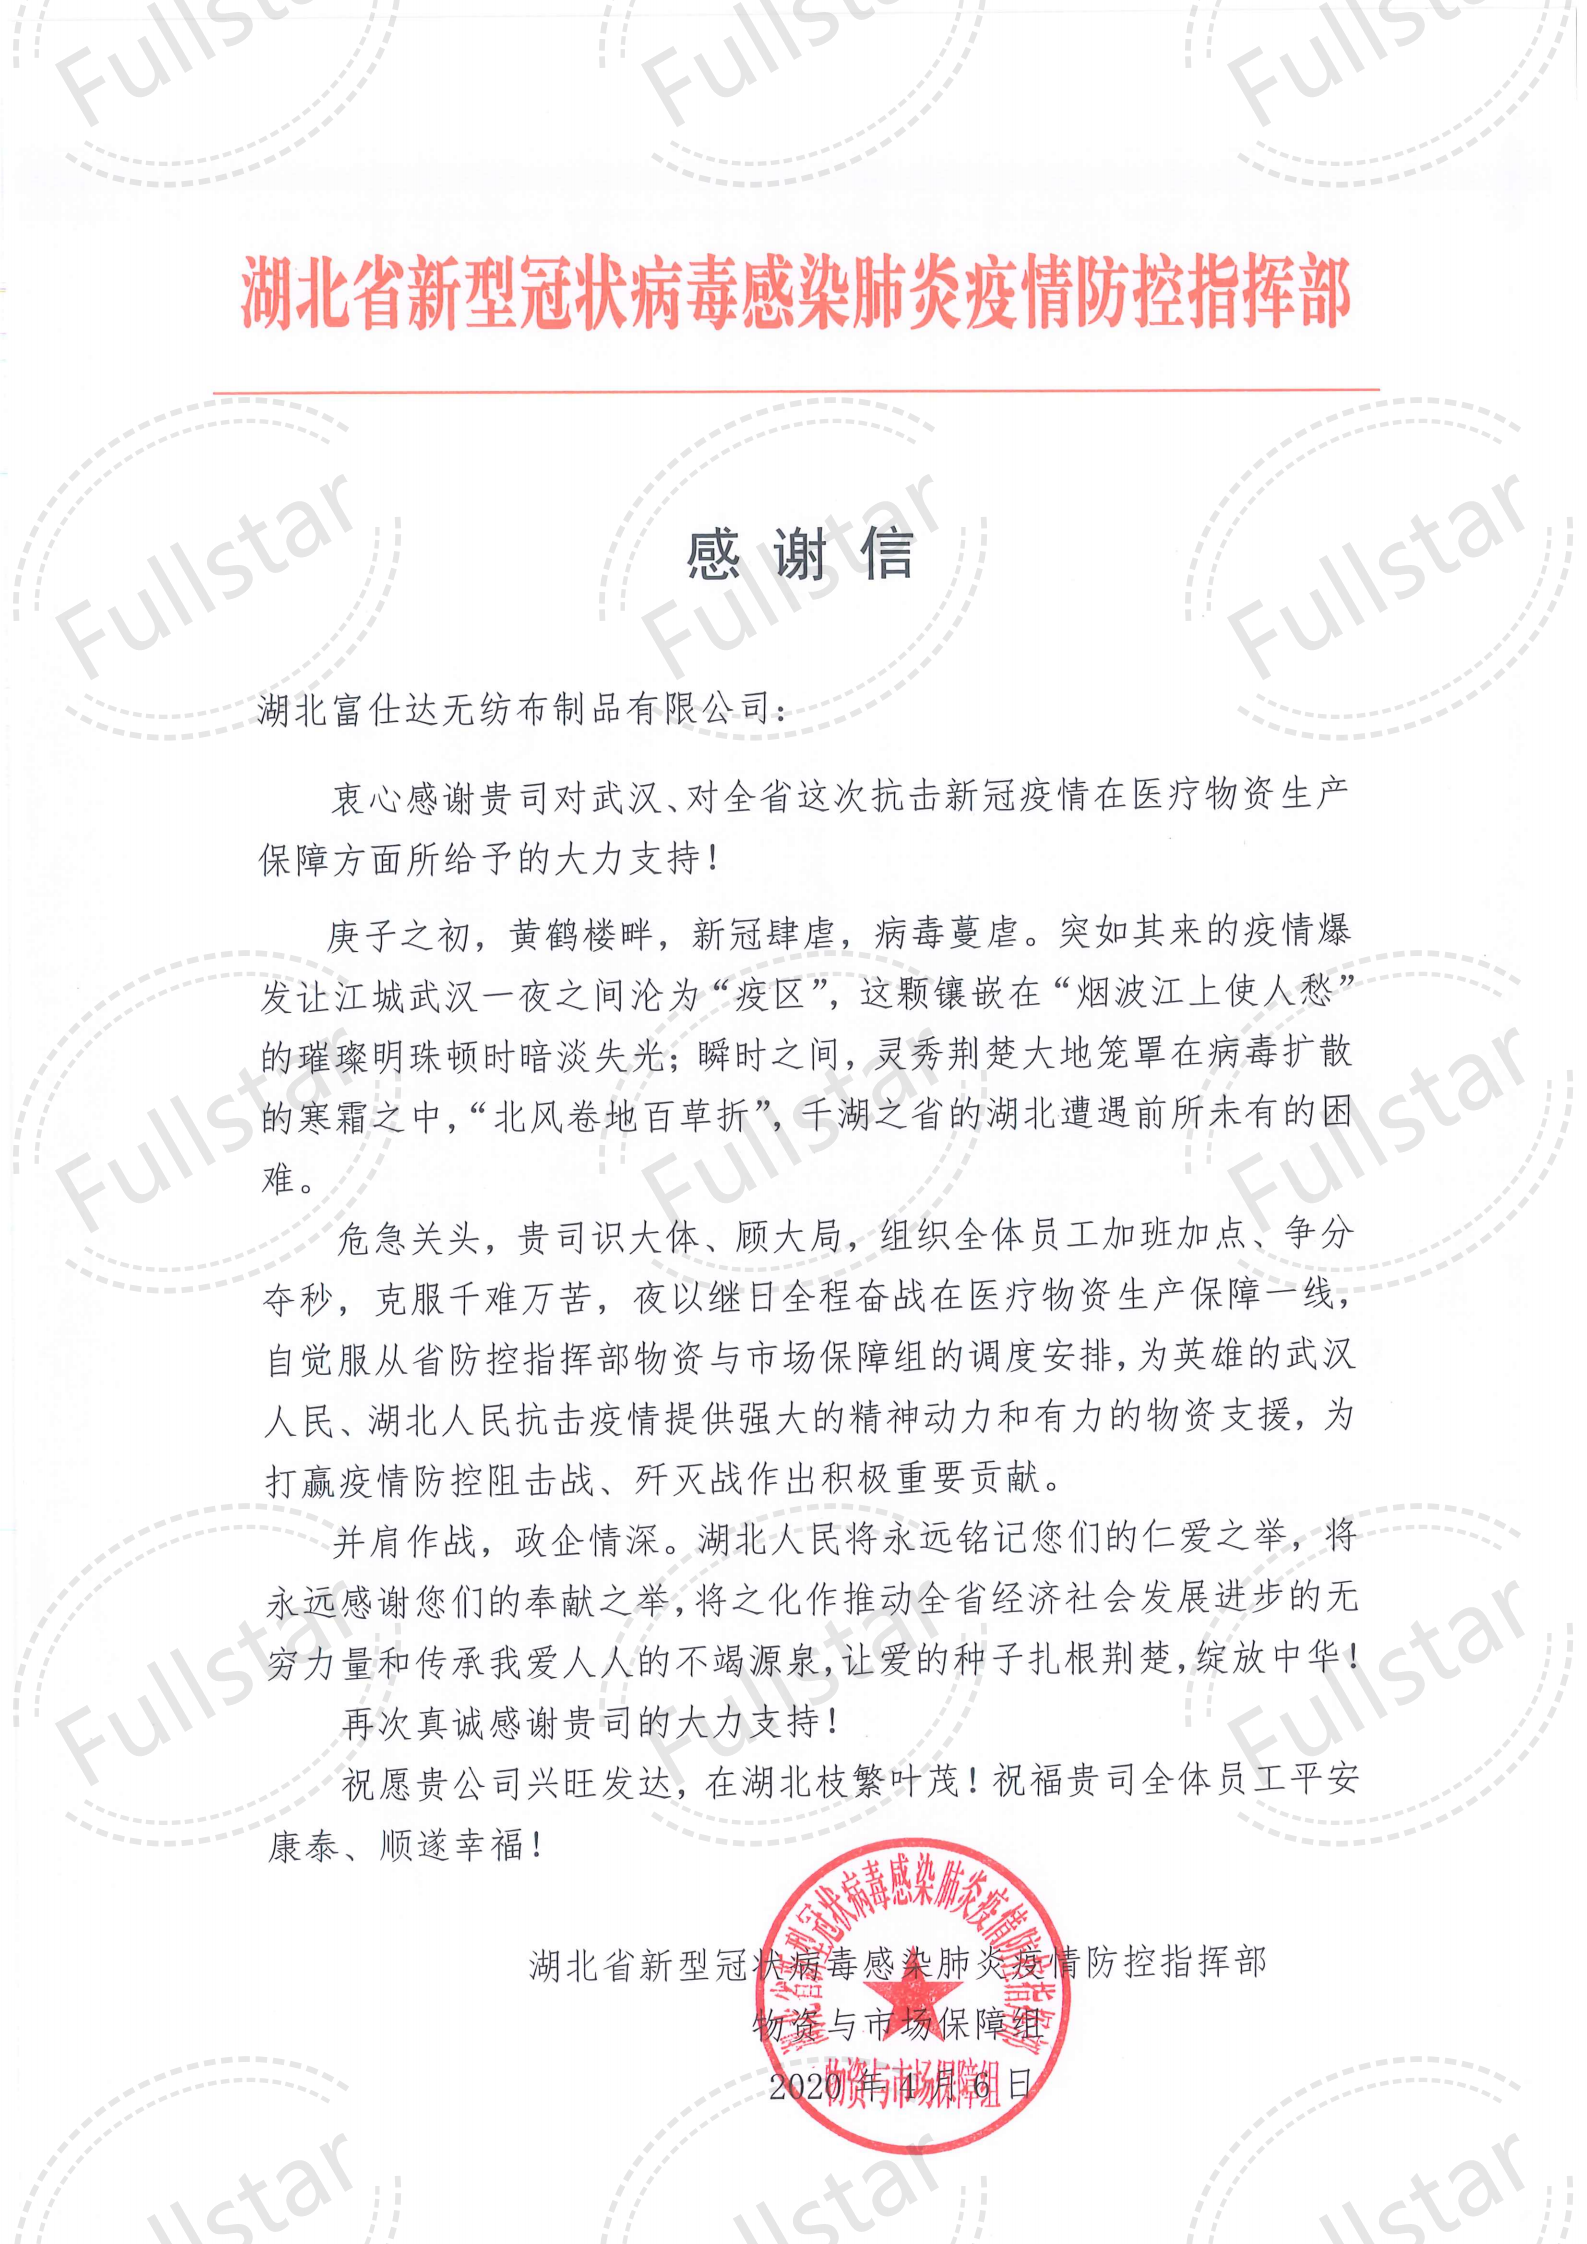 (Hubei Fushida Nonwovens Şirketi) Hubei Eyalet Önleme ve Kontrol Komutanlığı'ndan teşekkür mektubu _00 (1) .png